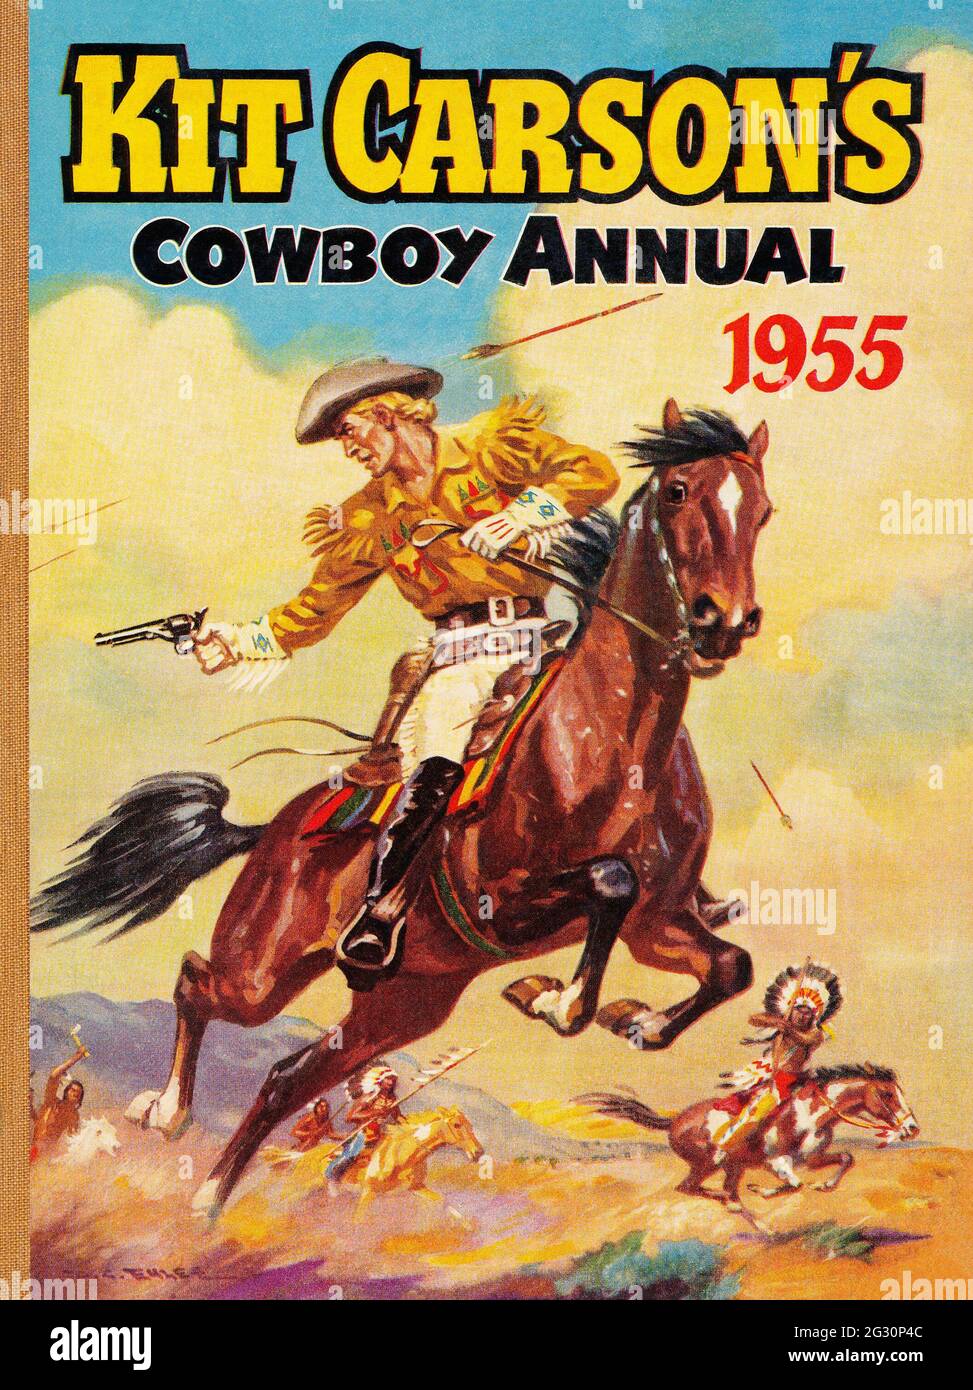 Livre pour enfants vintage couverture de Kit Carson Cowboy Annual 1955,  publié par Amalgamated Press. Illustration par D.C. Eyles Photo Stock -  Alamy